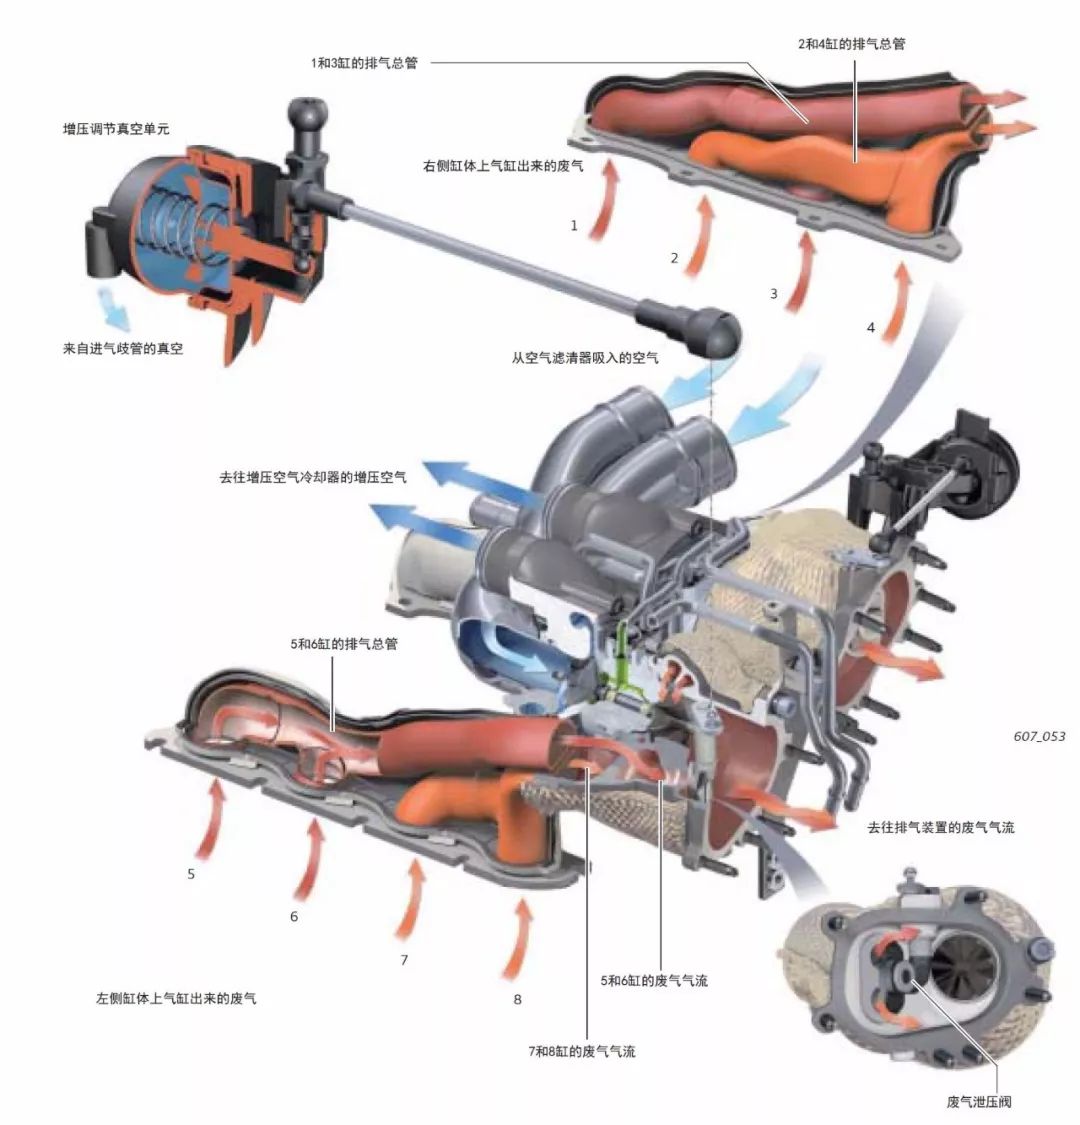 奥迪40升v8全新tfsi双涡轮增压发动机技术解析之空气供给系统和增压